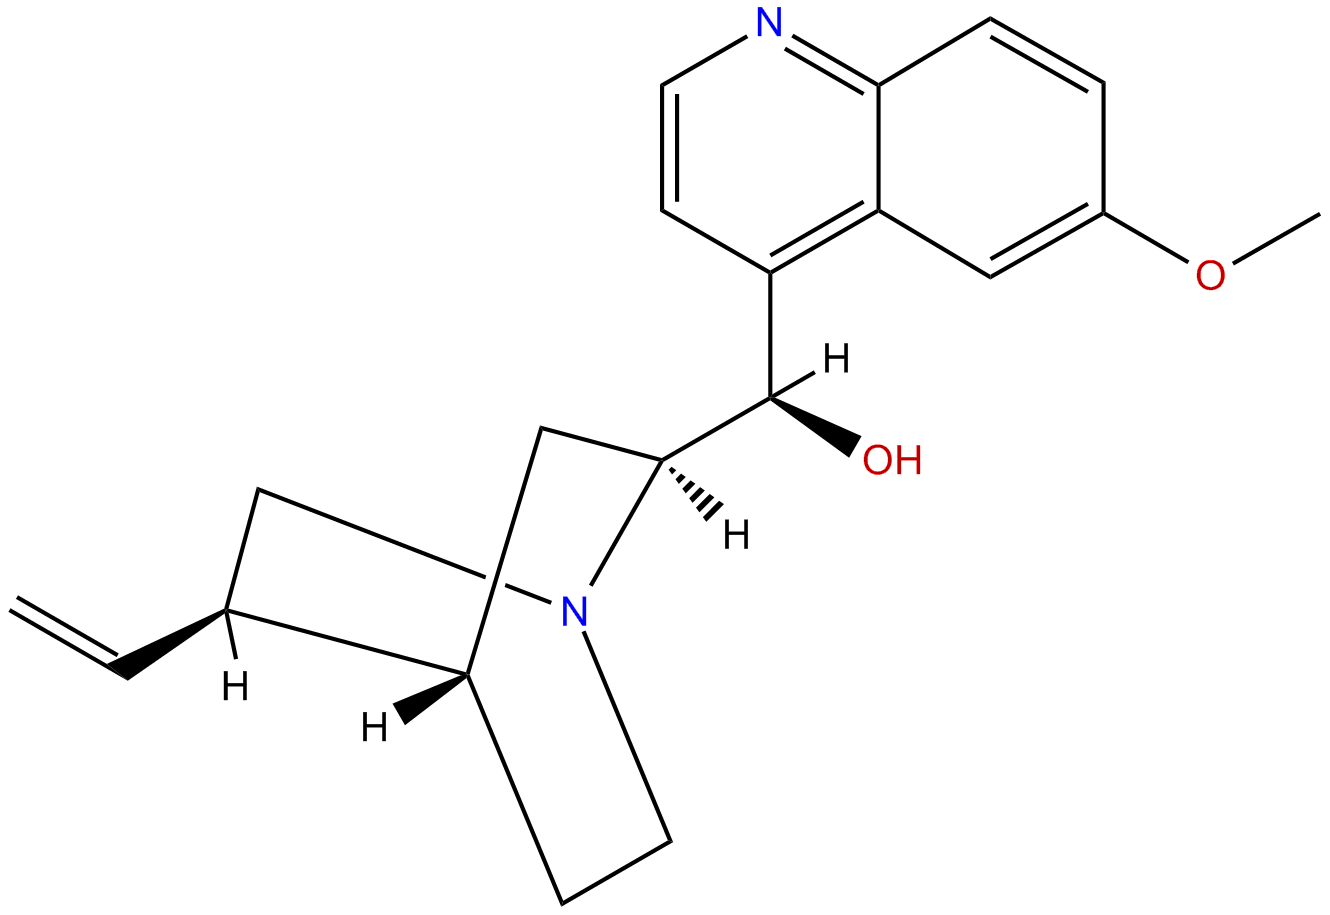 Image of quinine